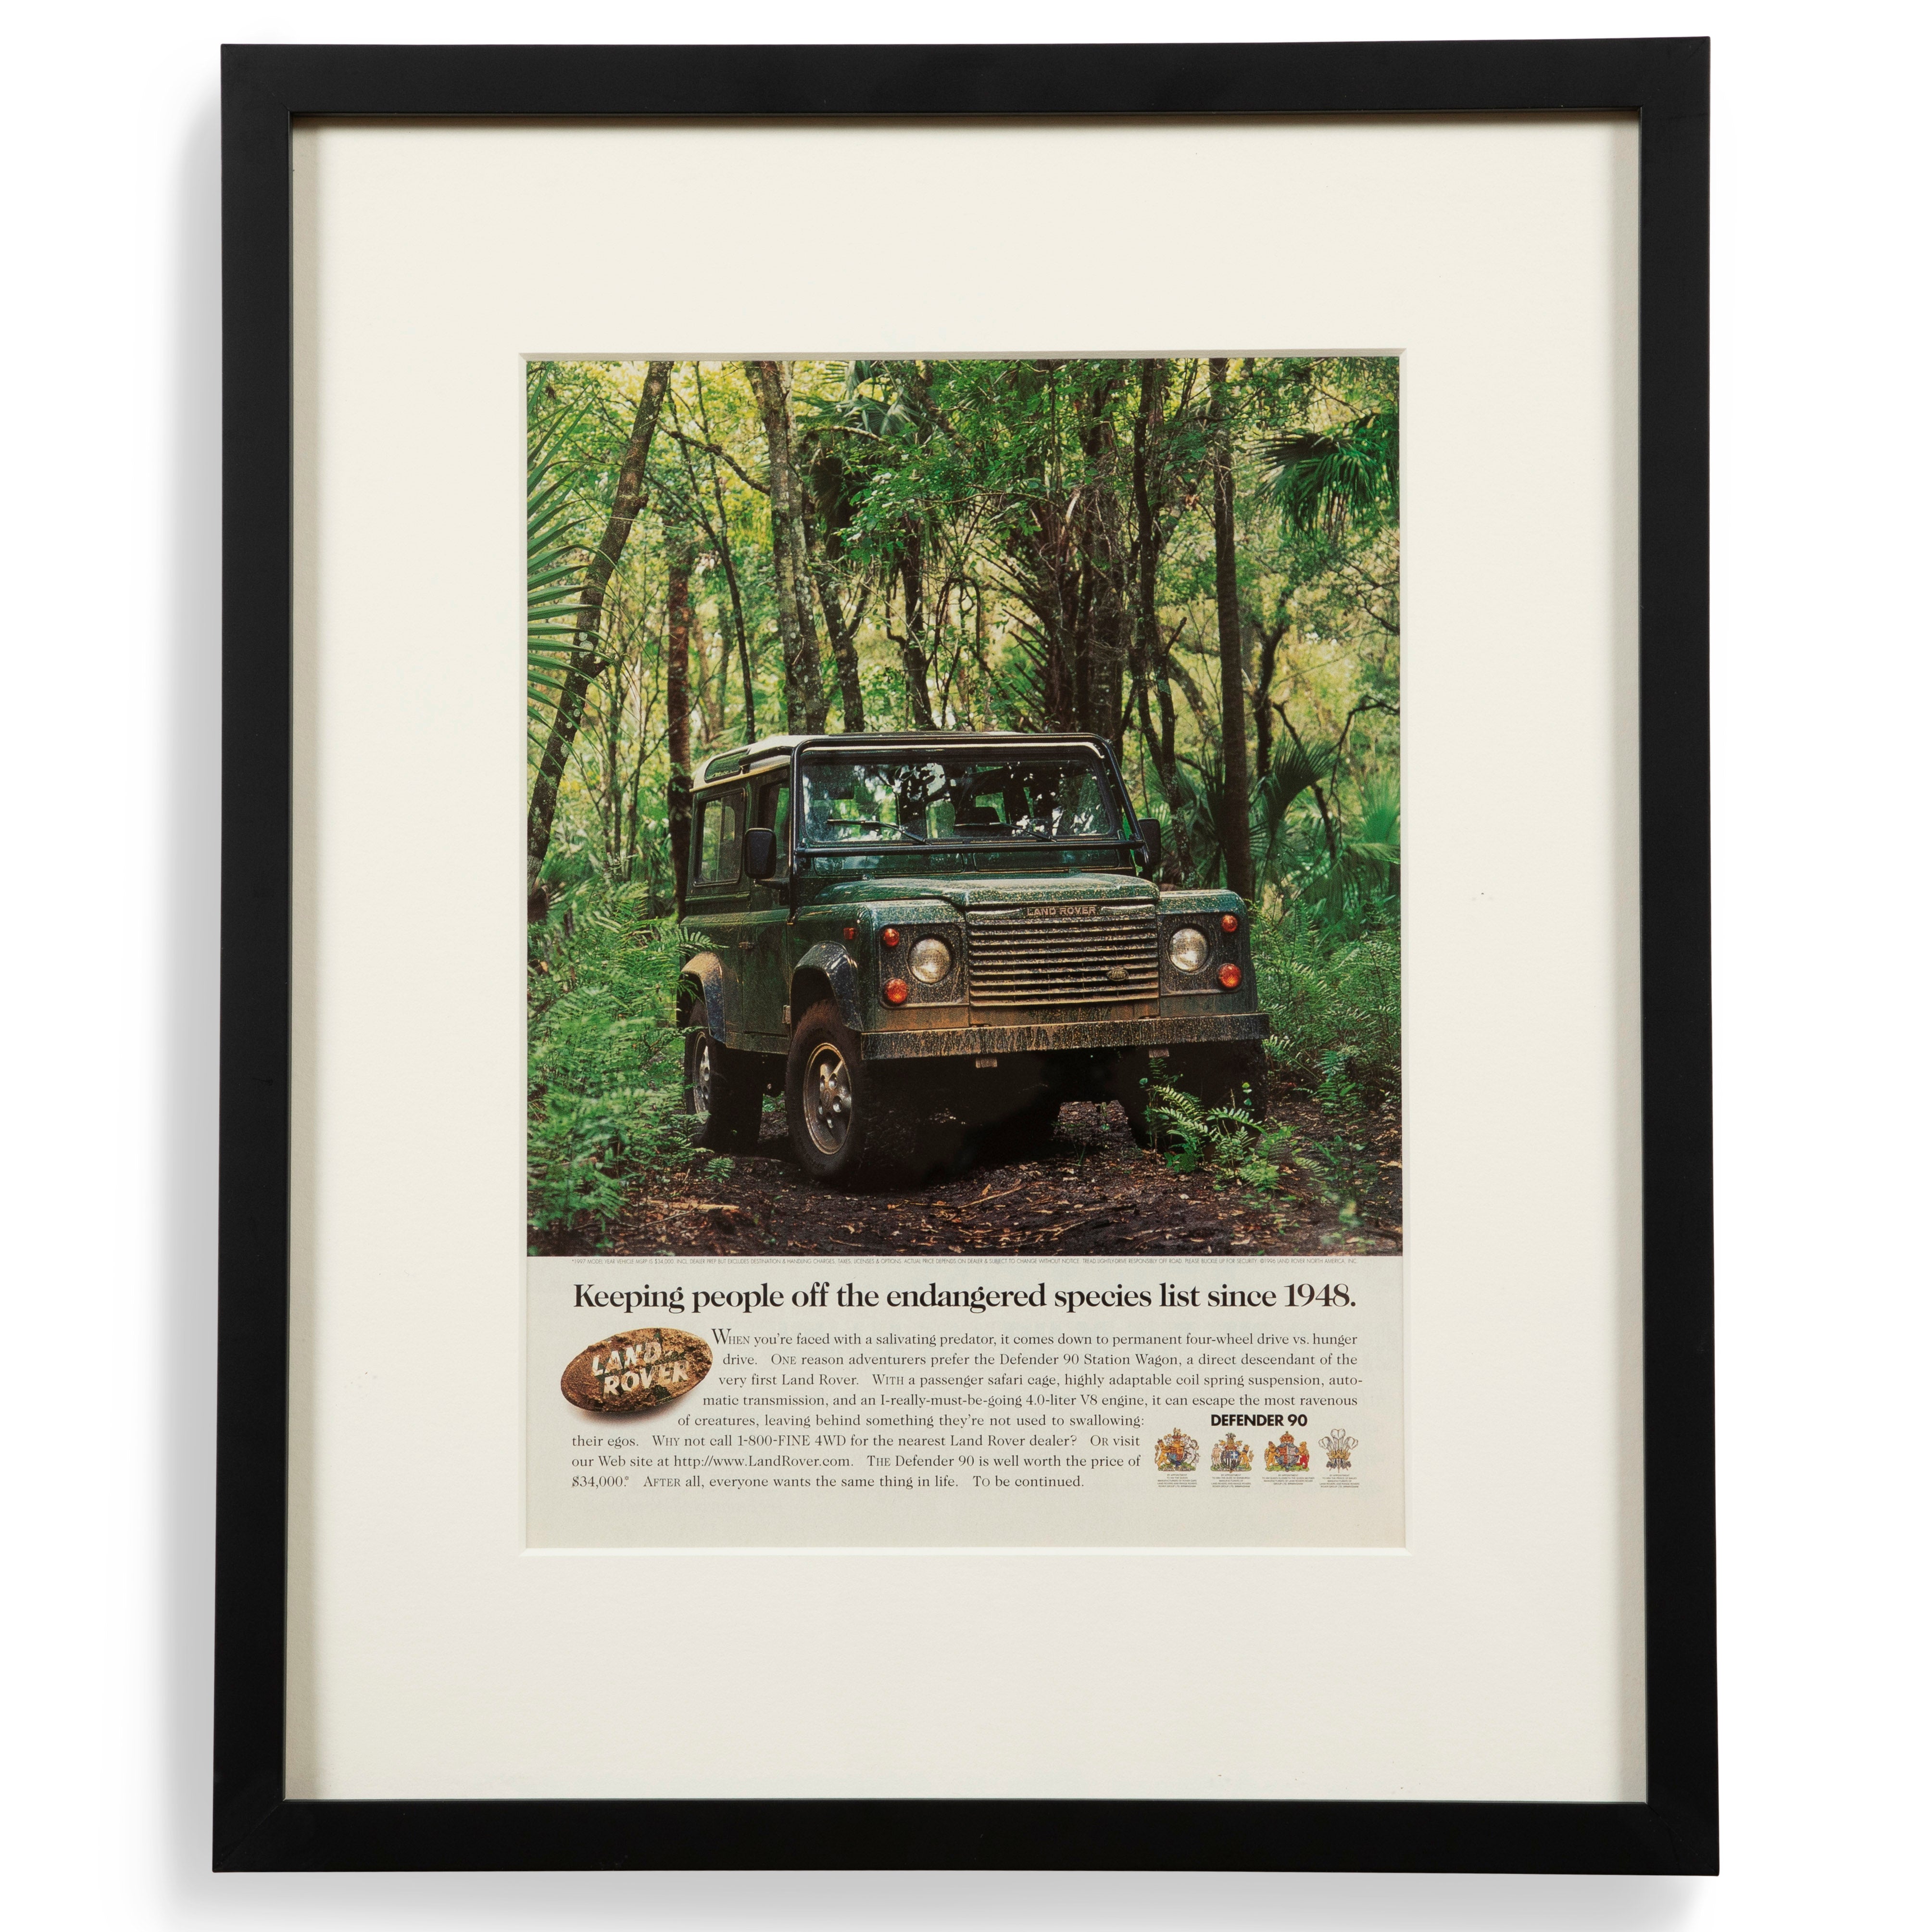 Vintage Land Rover Defender Endangered Species List Advertisement